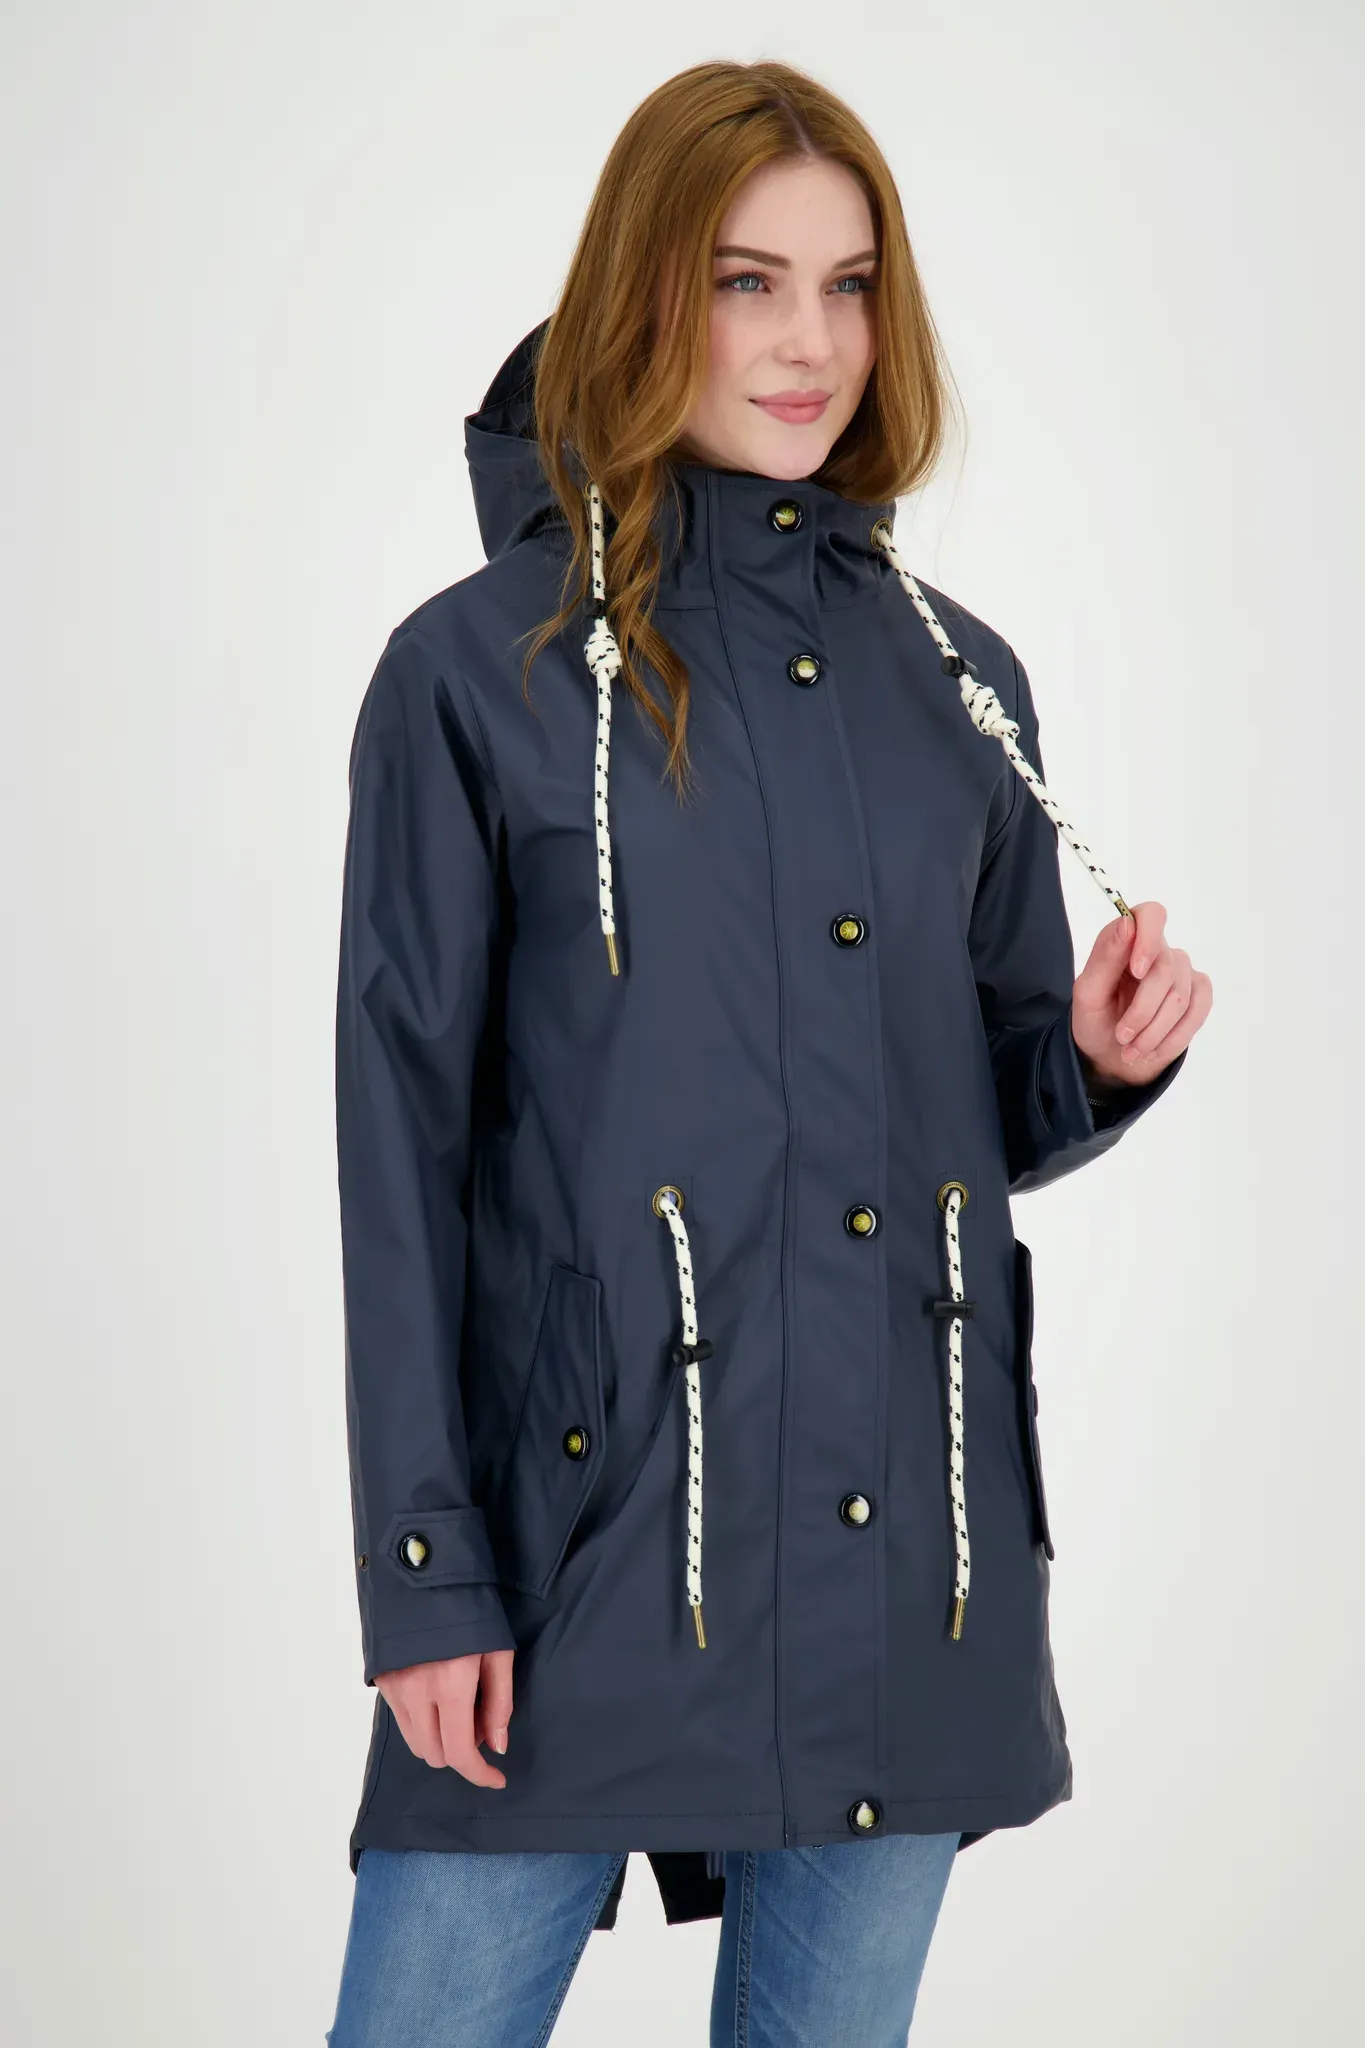 Regenjacke DEPROC ACTIVE "Friesennerz LOVE PEAK UNI WOMEN" Gr. 44 (L), blau (navy) Damen Jacken Regenjacken Anoraks auch in Großen Größen erhältlich